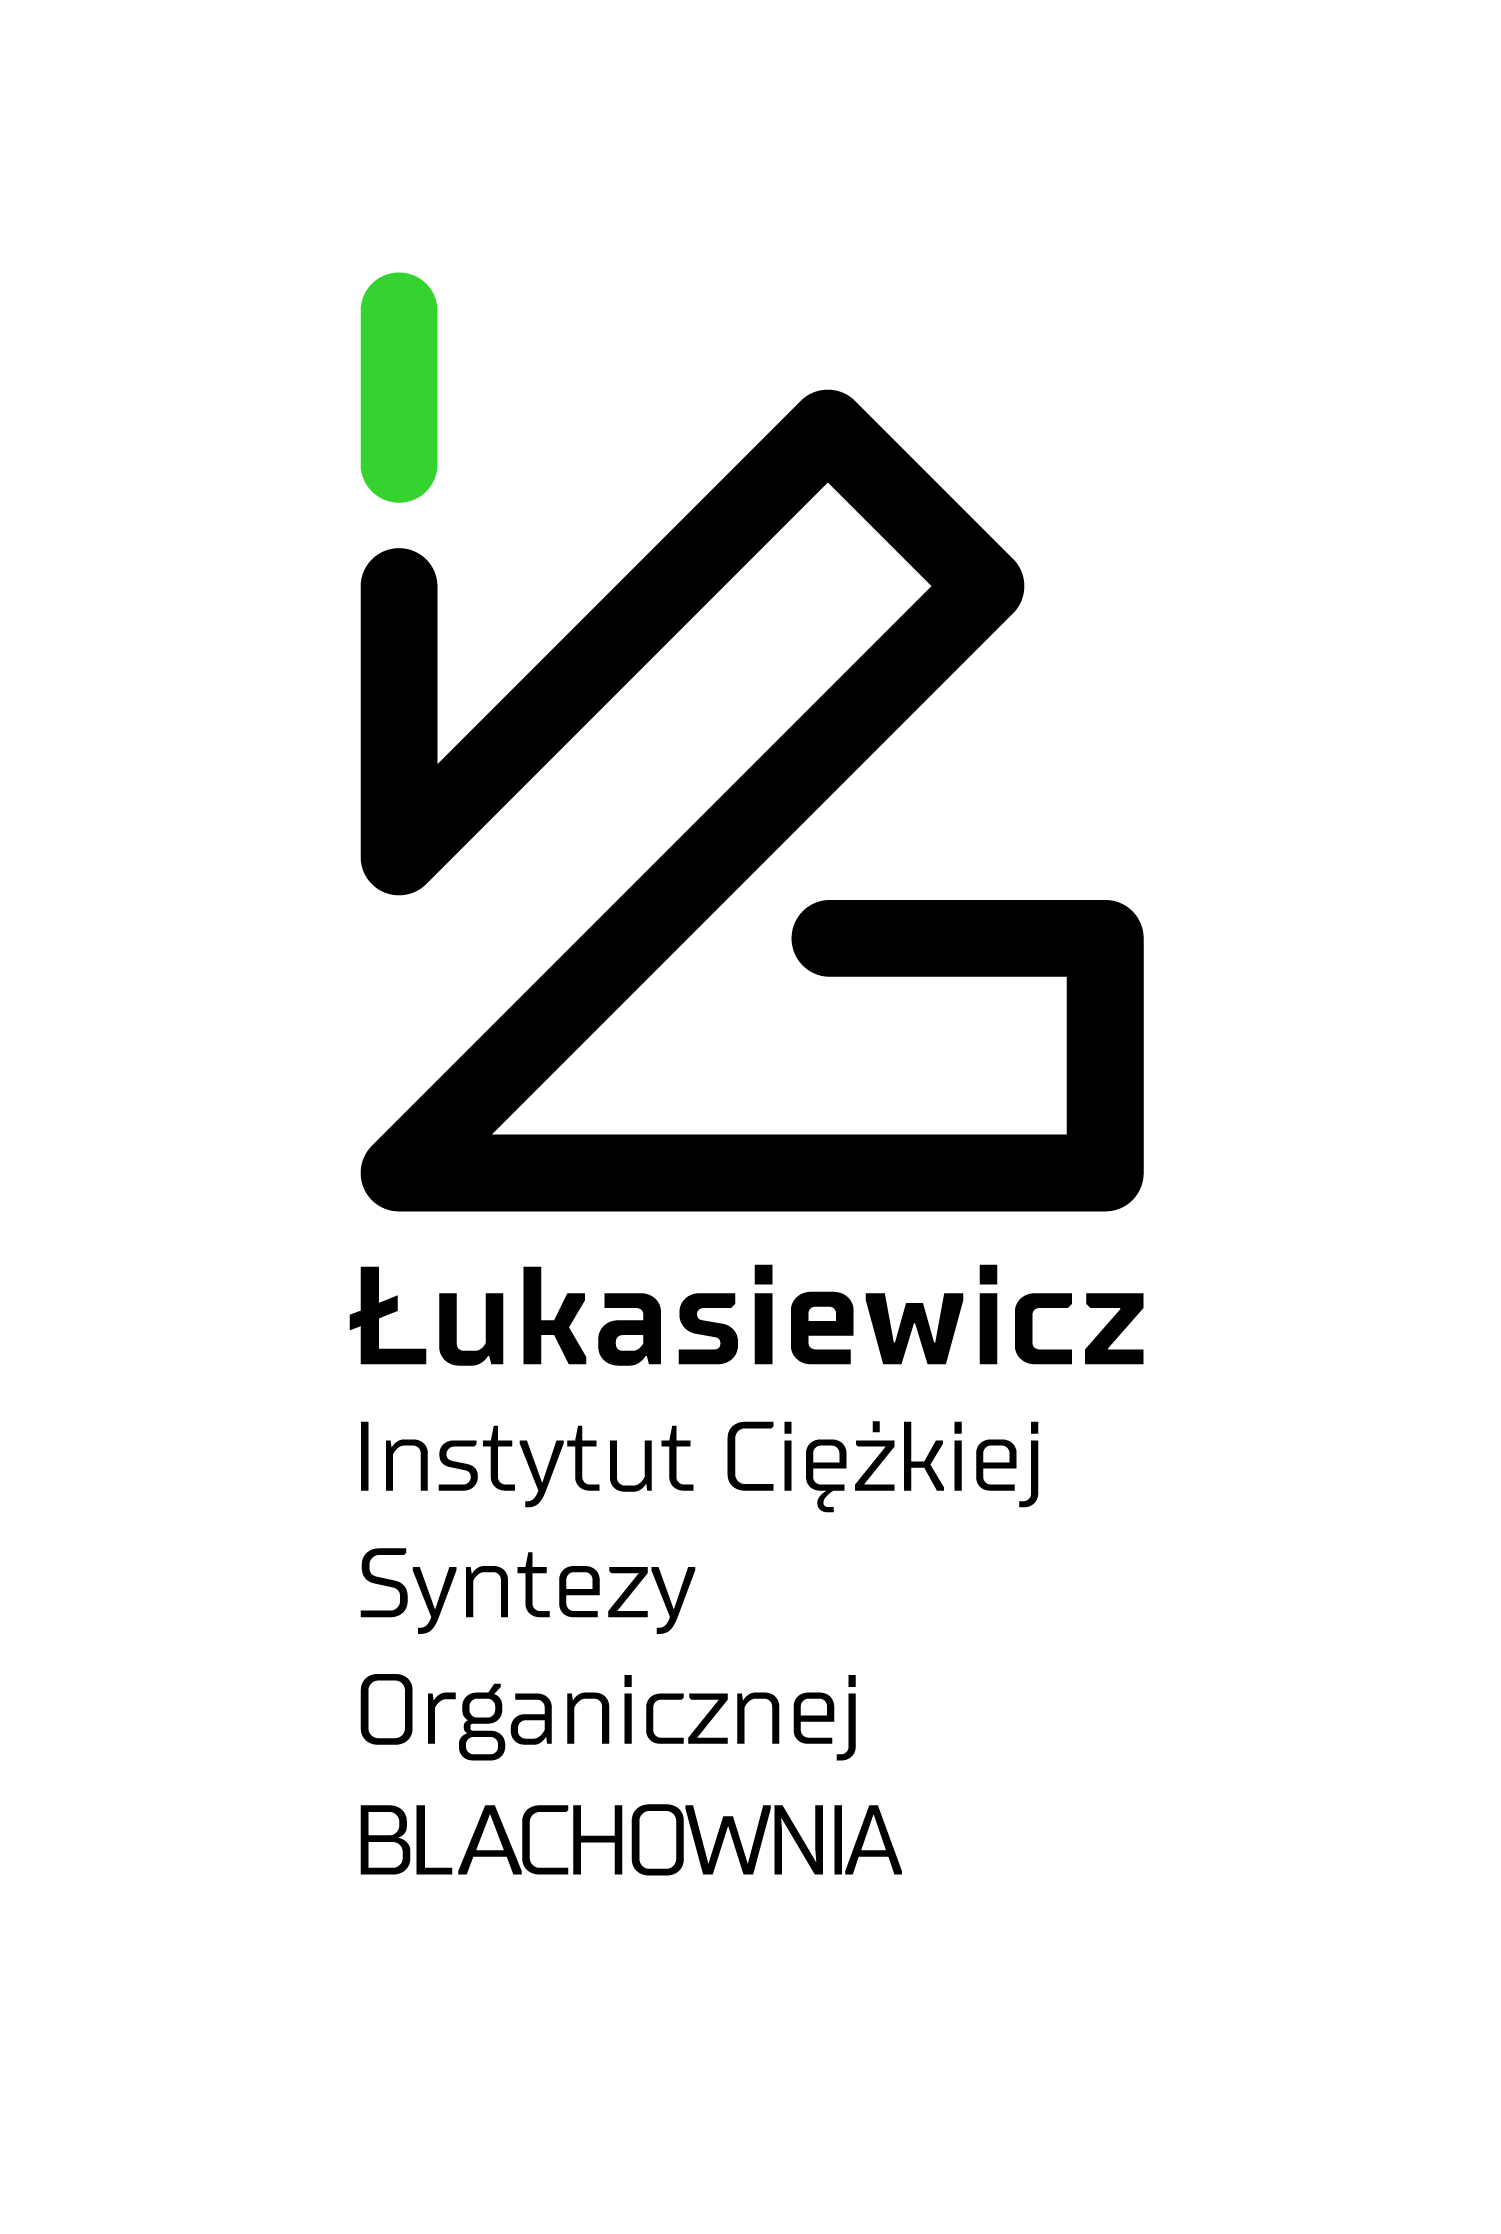 Sieć Badawcza Łukasiewicz - Instytut Ciężkiej Syntezy Organicznej 